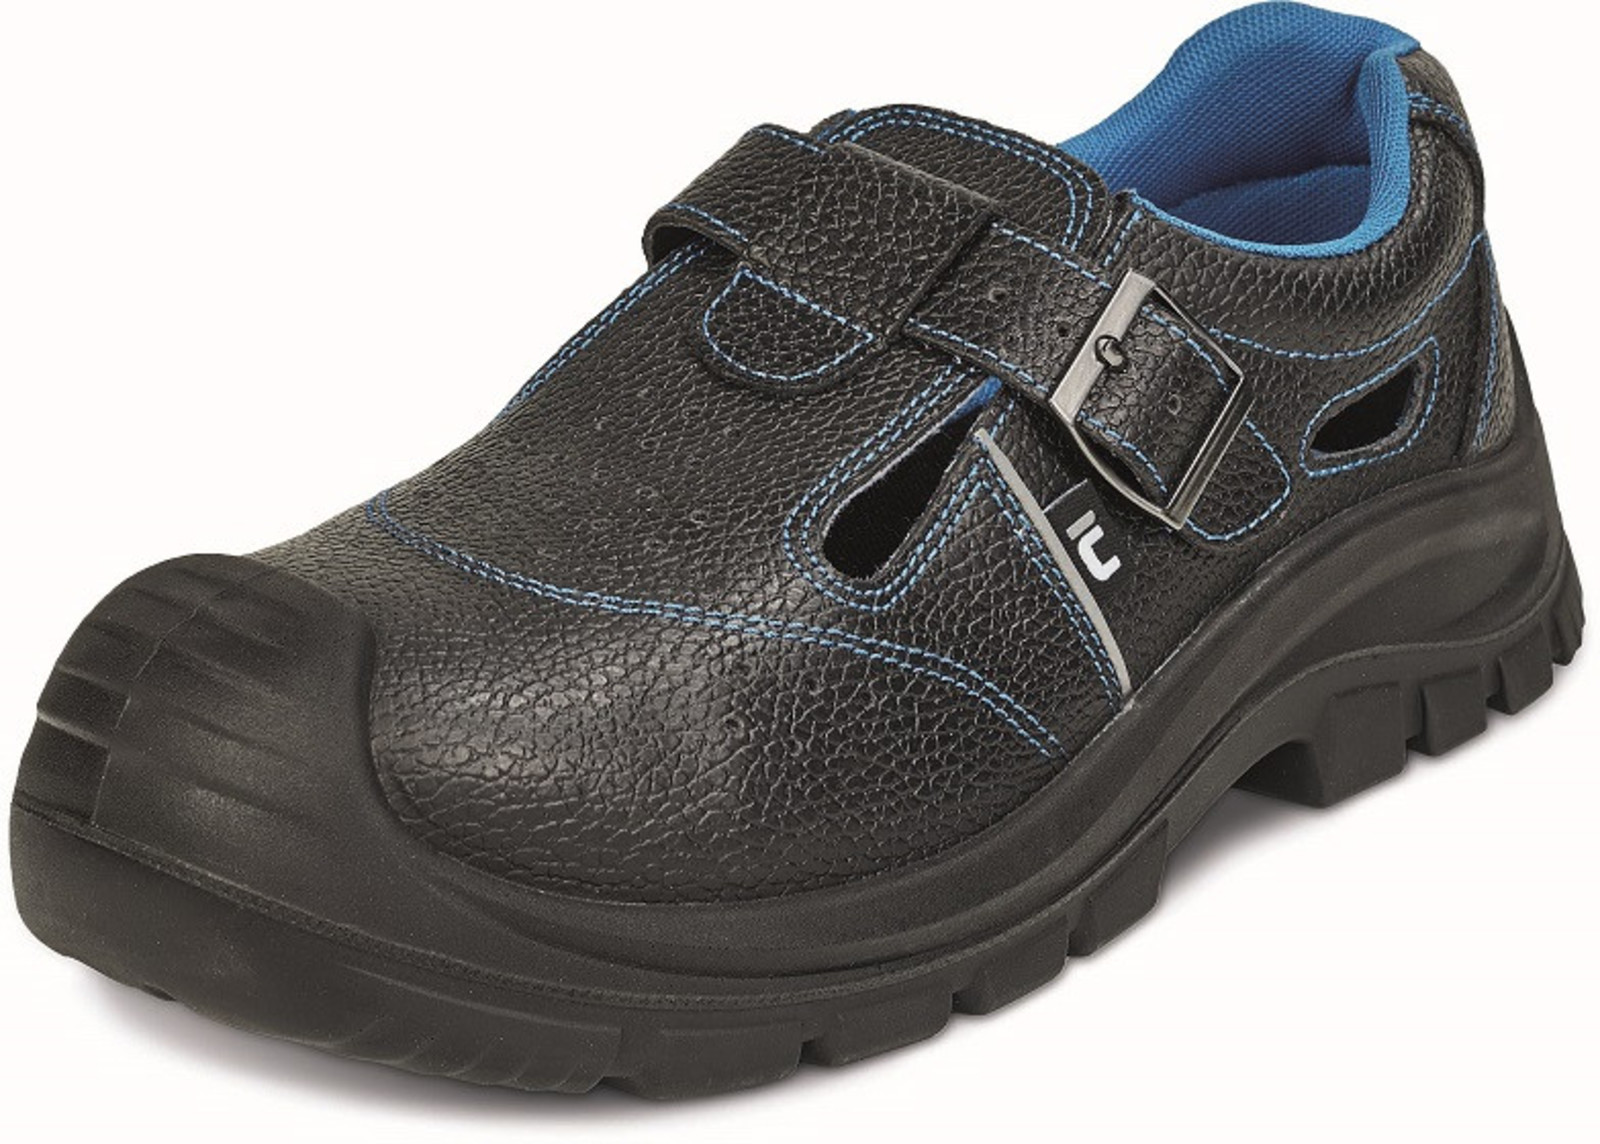 Bezpečnostné sandále Raven XT S1P - veľkosť: 48, farba: čierna